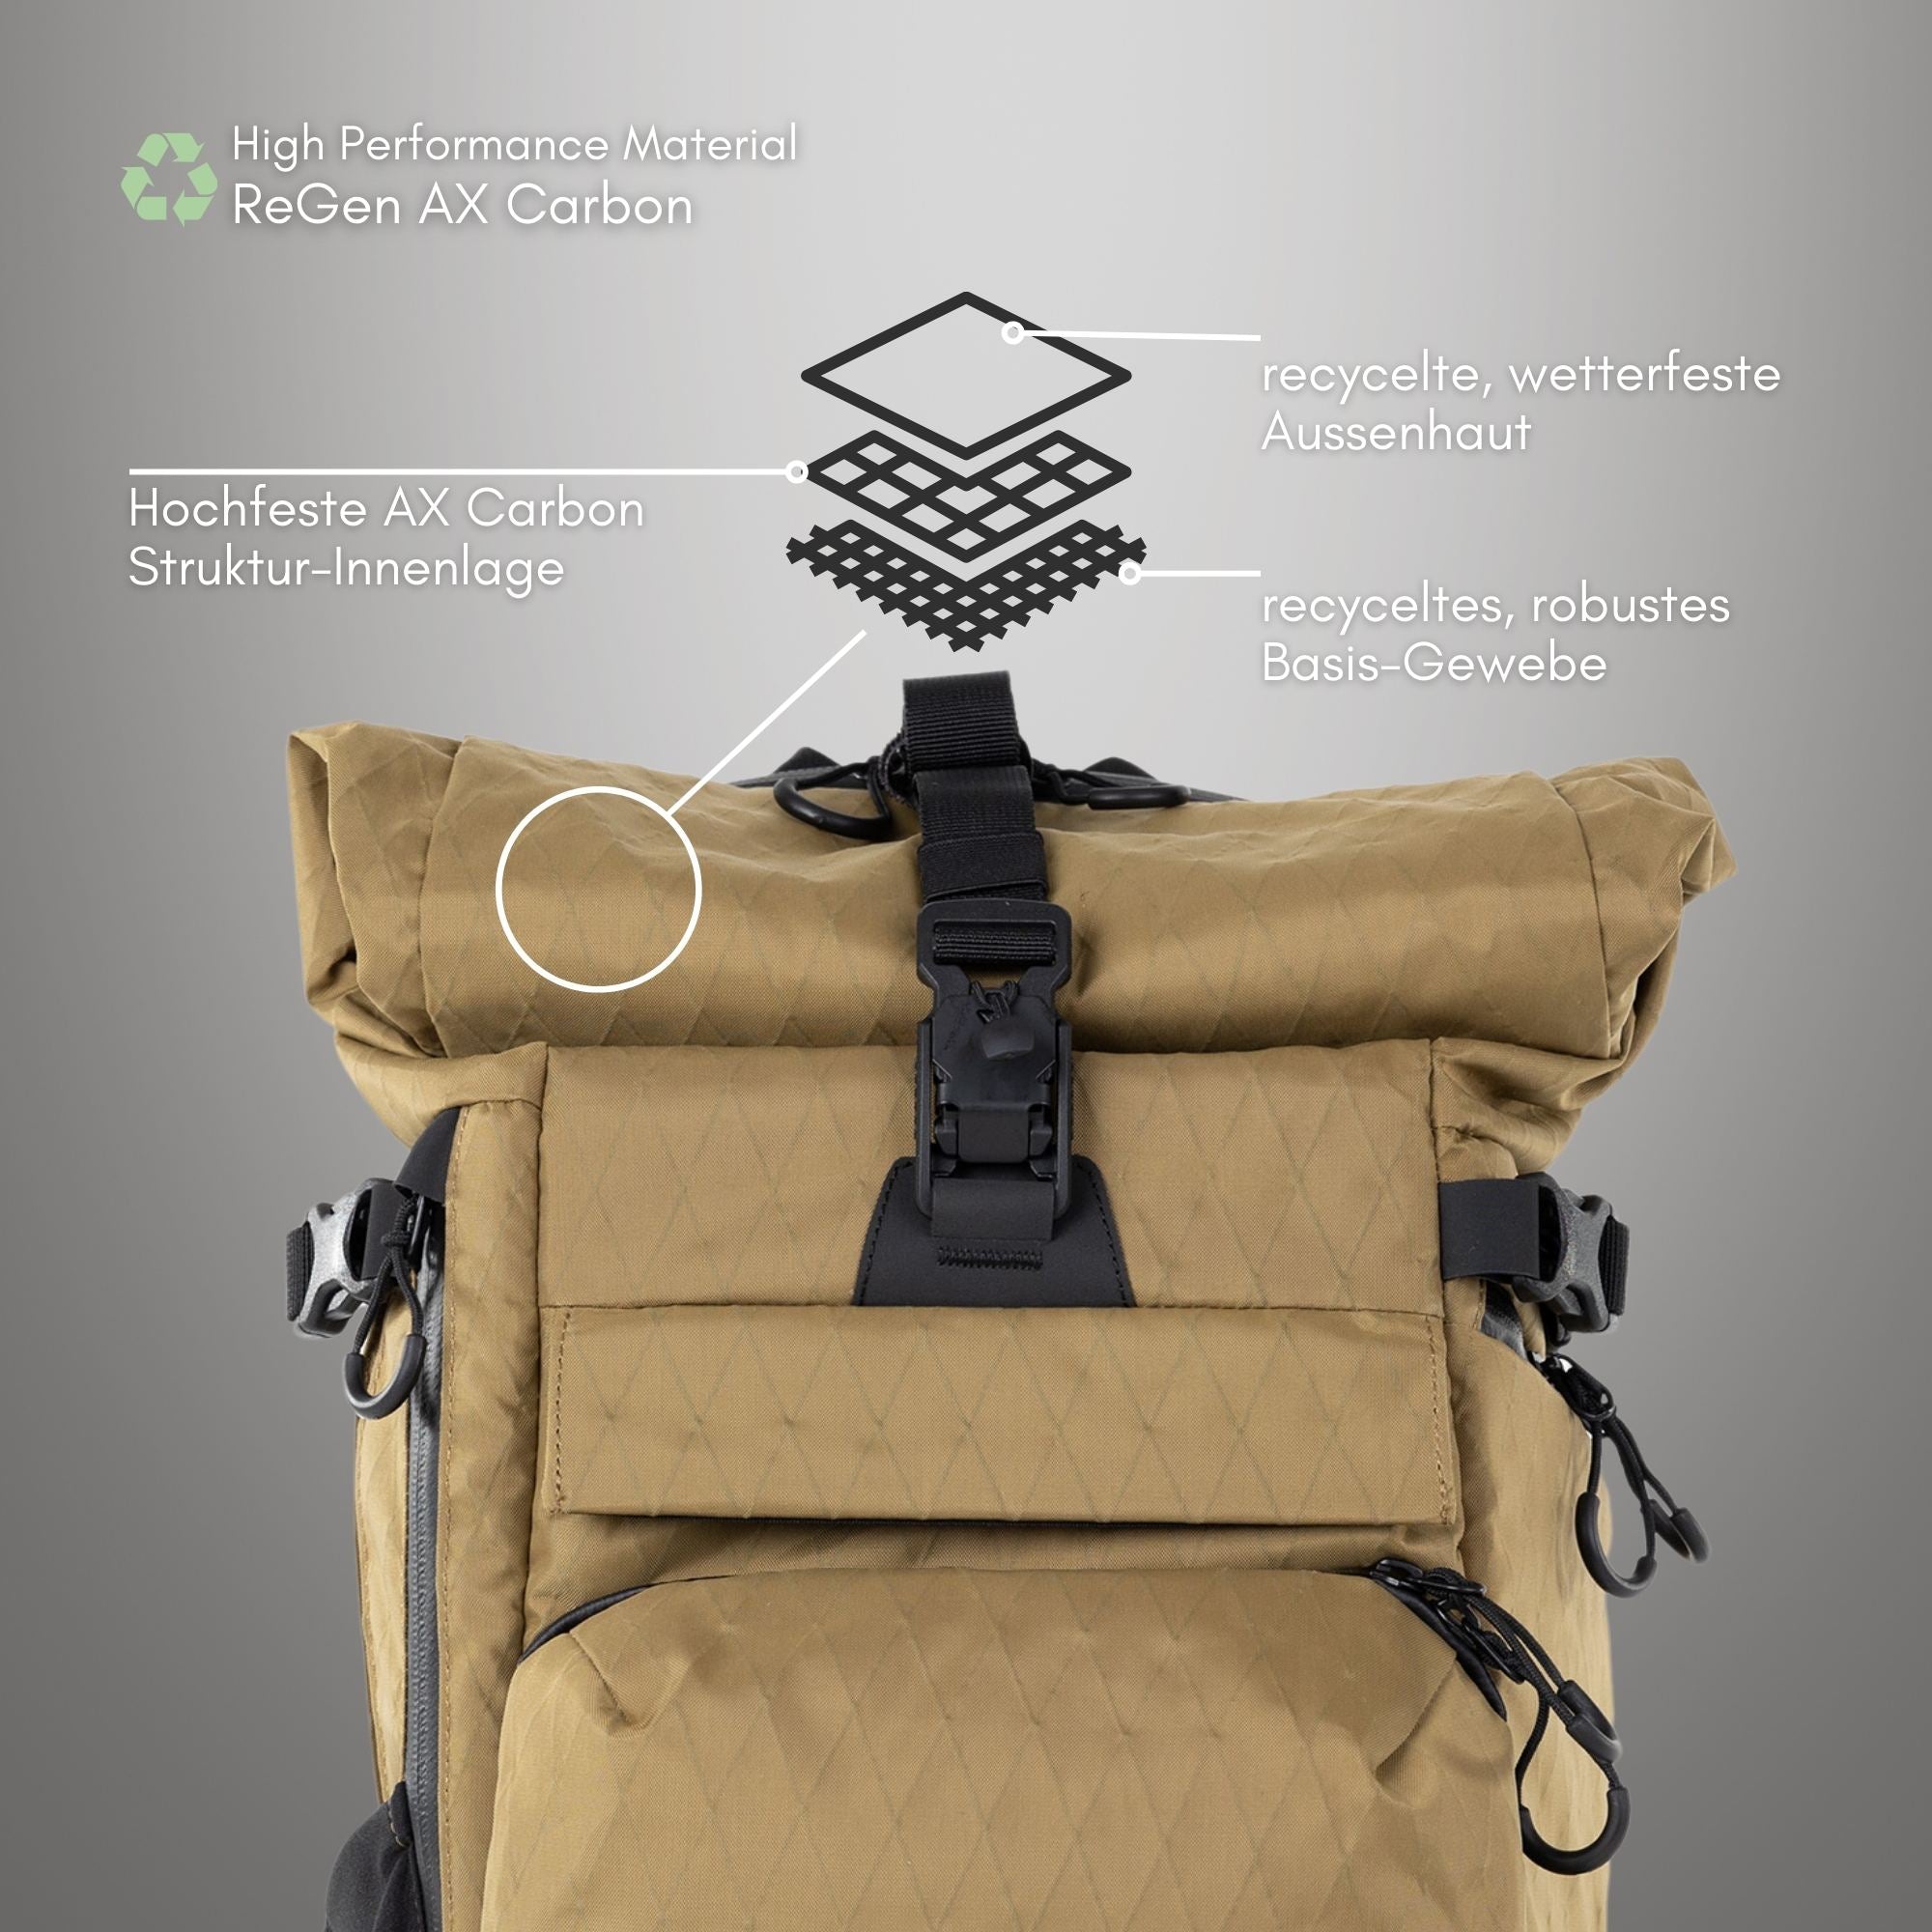 Element backpack 30L